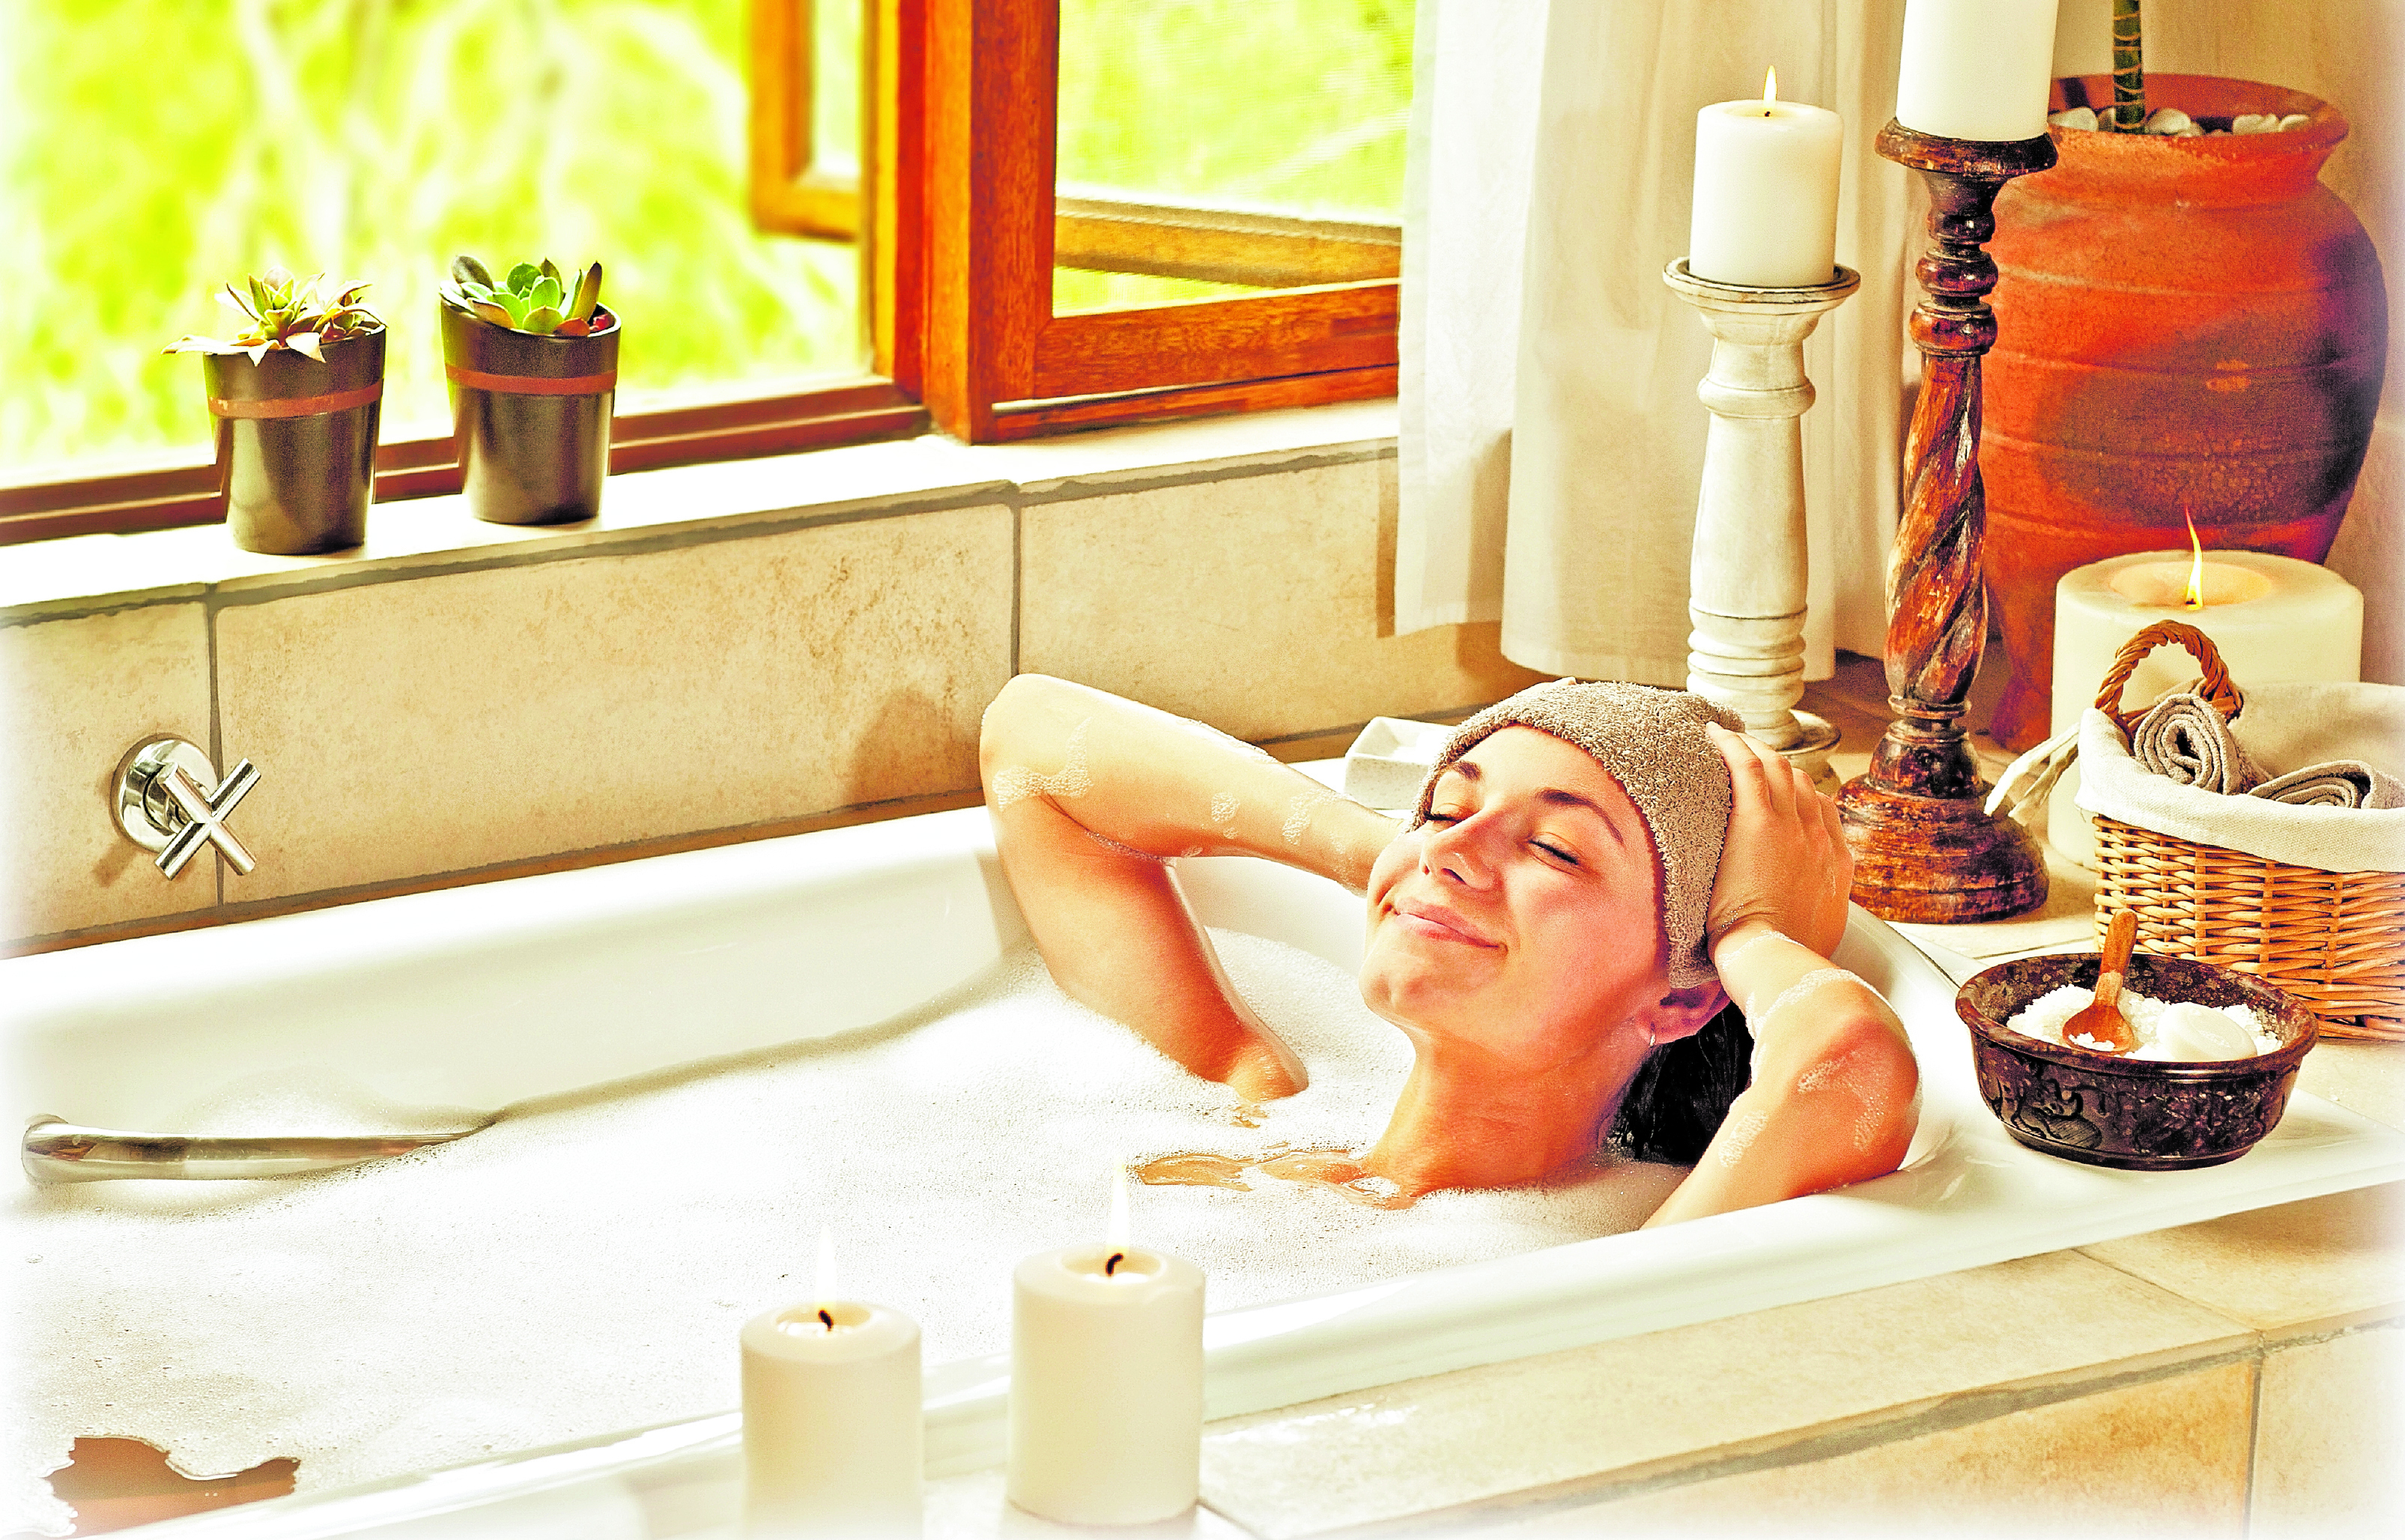 Con productos que tiene en casa puede hacer su propio spa y dedicar tiempo para su cuidado personal y relajación. (Foto Prensa Libre: Hemeroteca PL).